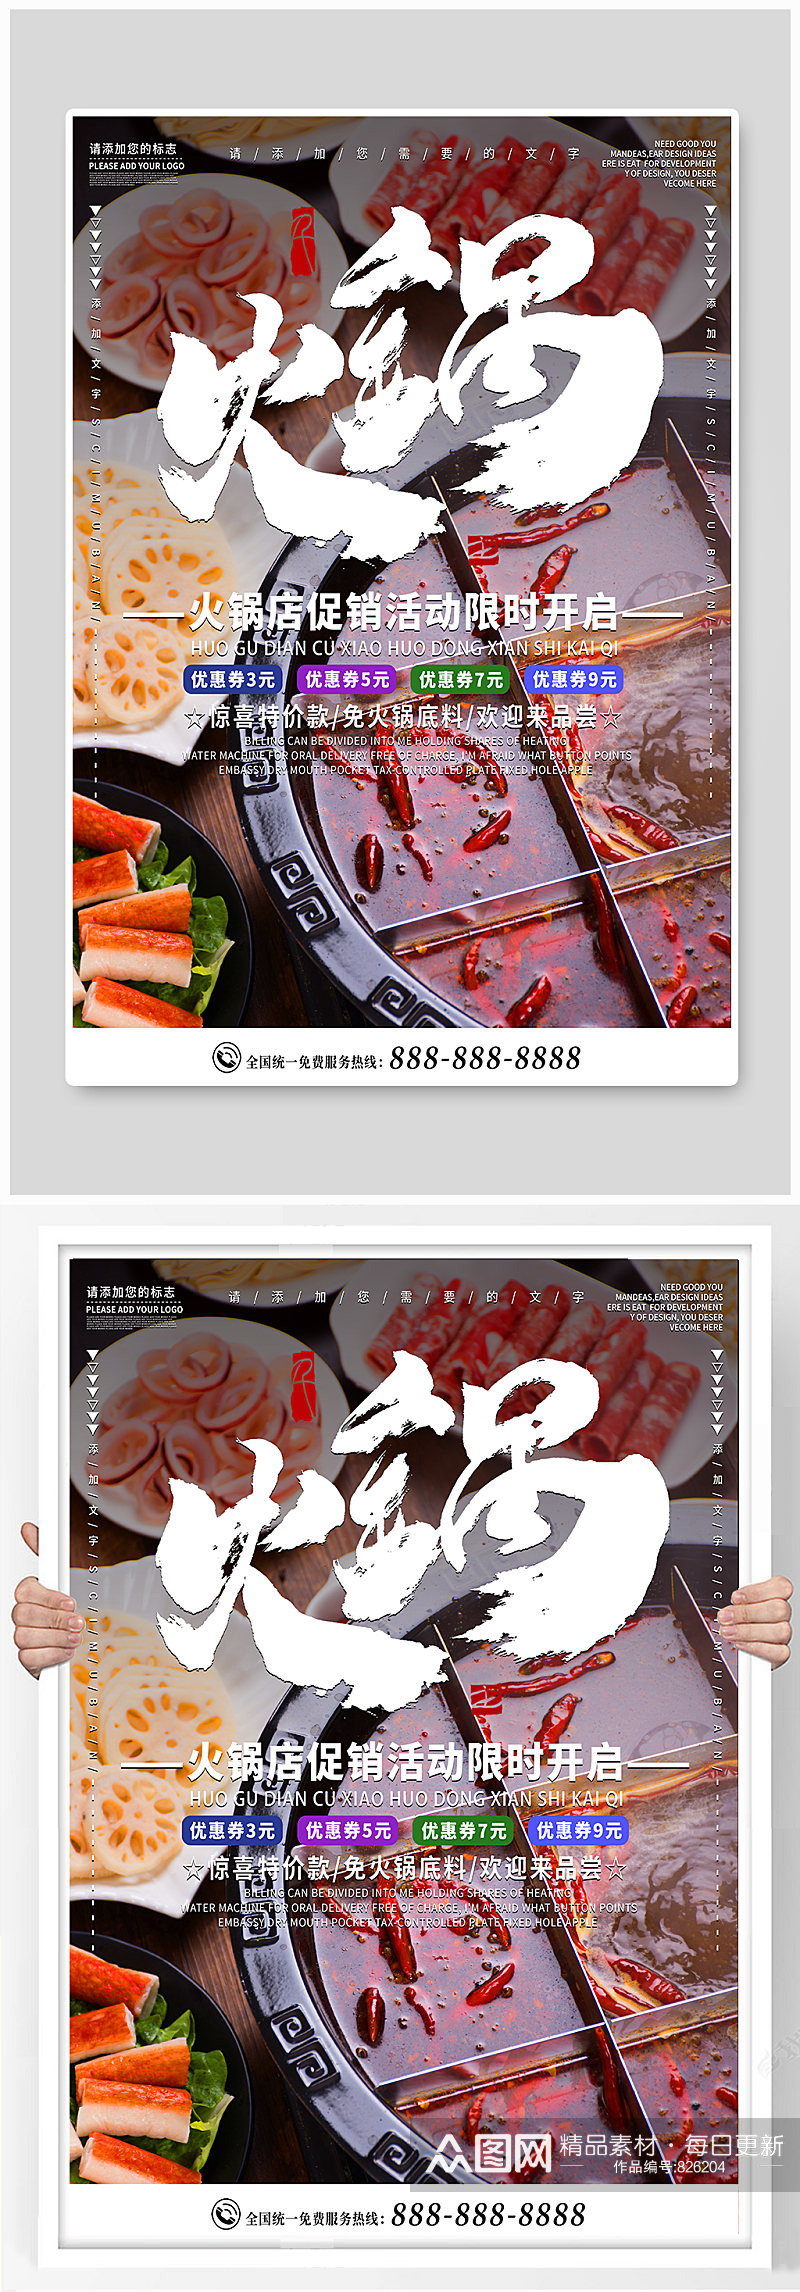 火锅店促销销售海报素材